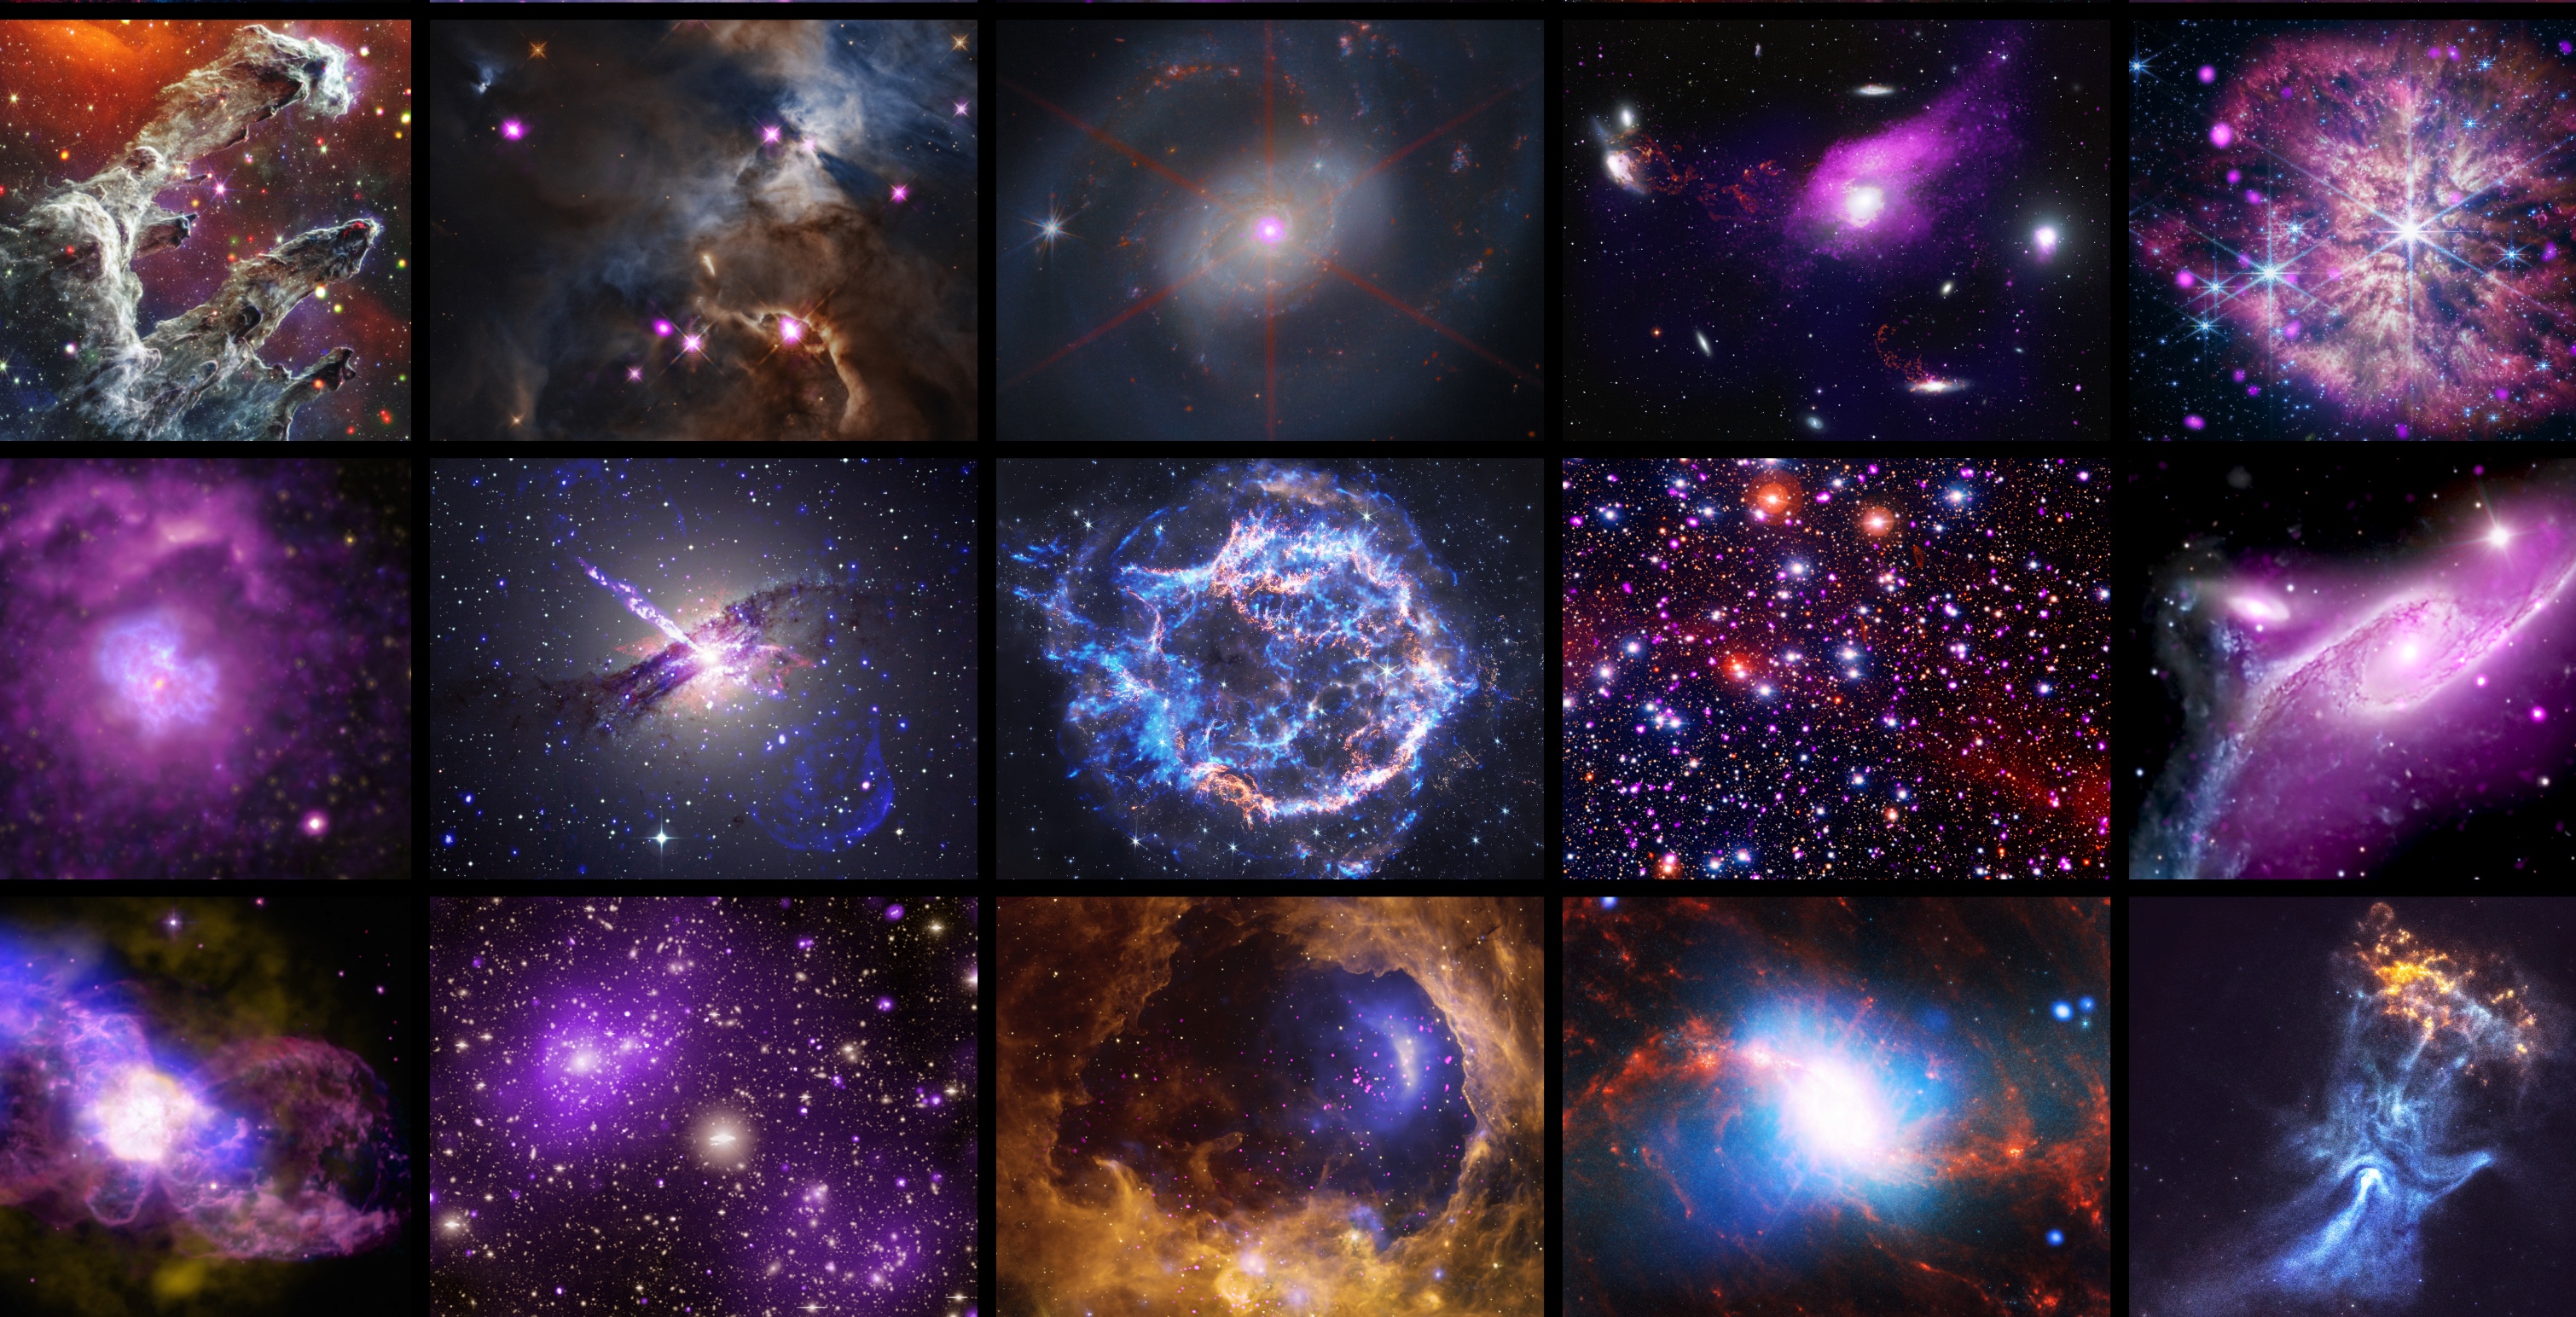 En 25 ans, l’observatoire de rayons X Chandra a renvoyé de nombreuses images merveilleuses de notre Univers. © X-ray : Nasa/CXC/SAO ; Infrared: Nasa/ESA/CSA/STScI ; Image Processing : Nasa/CXC/SAO/J. Major, S. Wolk